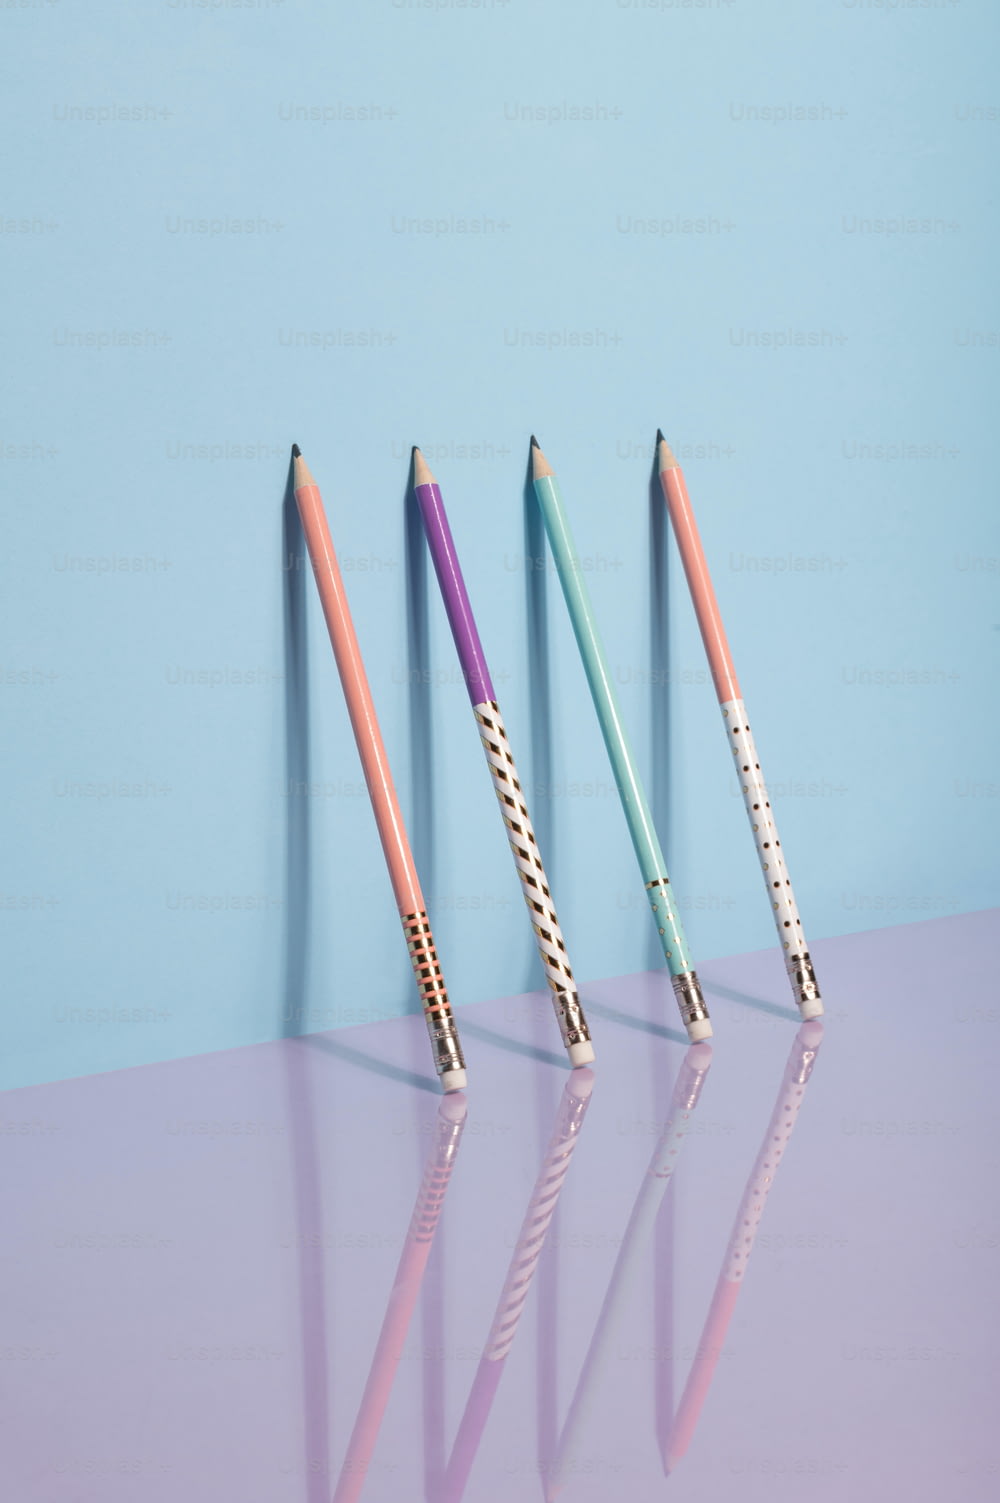 Trois crayons de couleurs différentes sont alignés dans une rangée